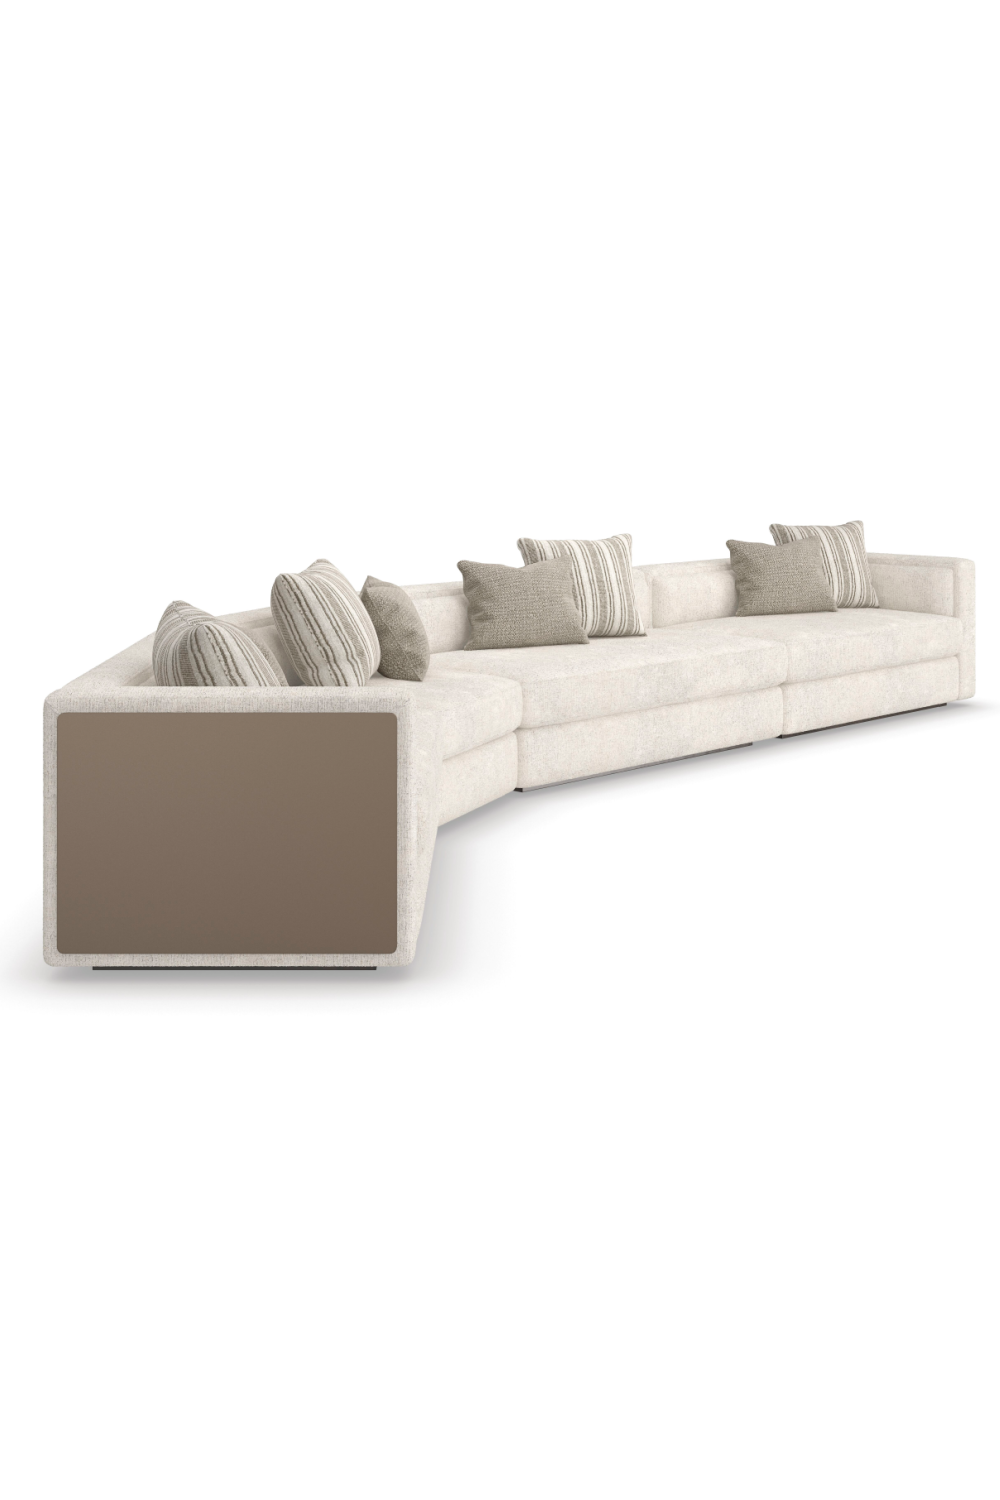 Cream Minimalist Sectional Sofa | Caracole Unity | Oroa.com